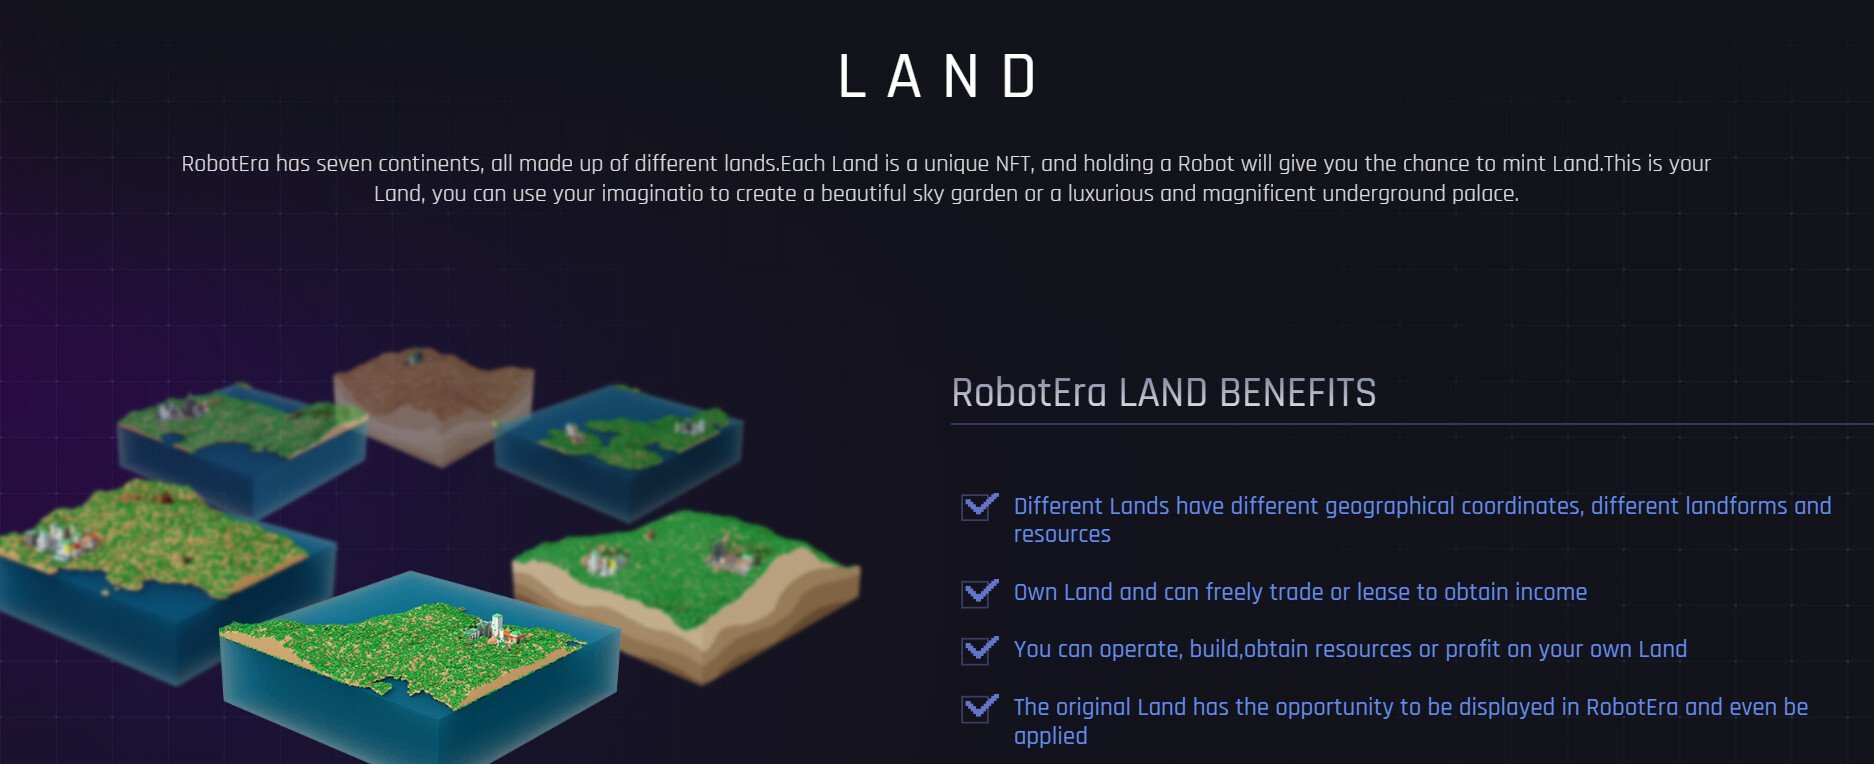 RobotEra Land